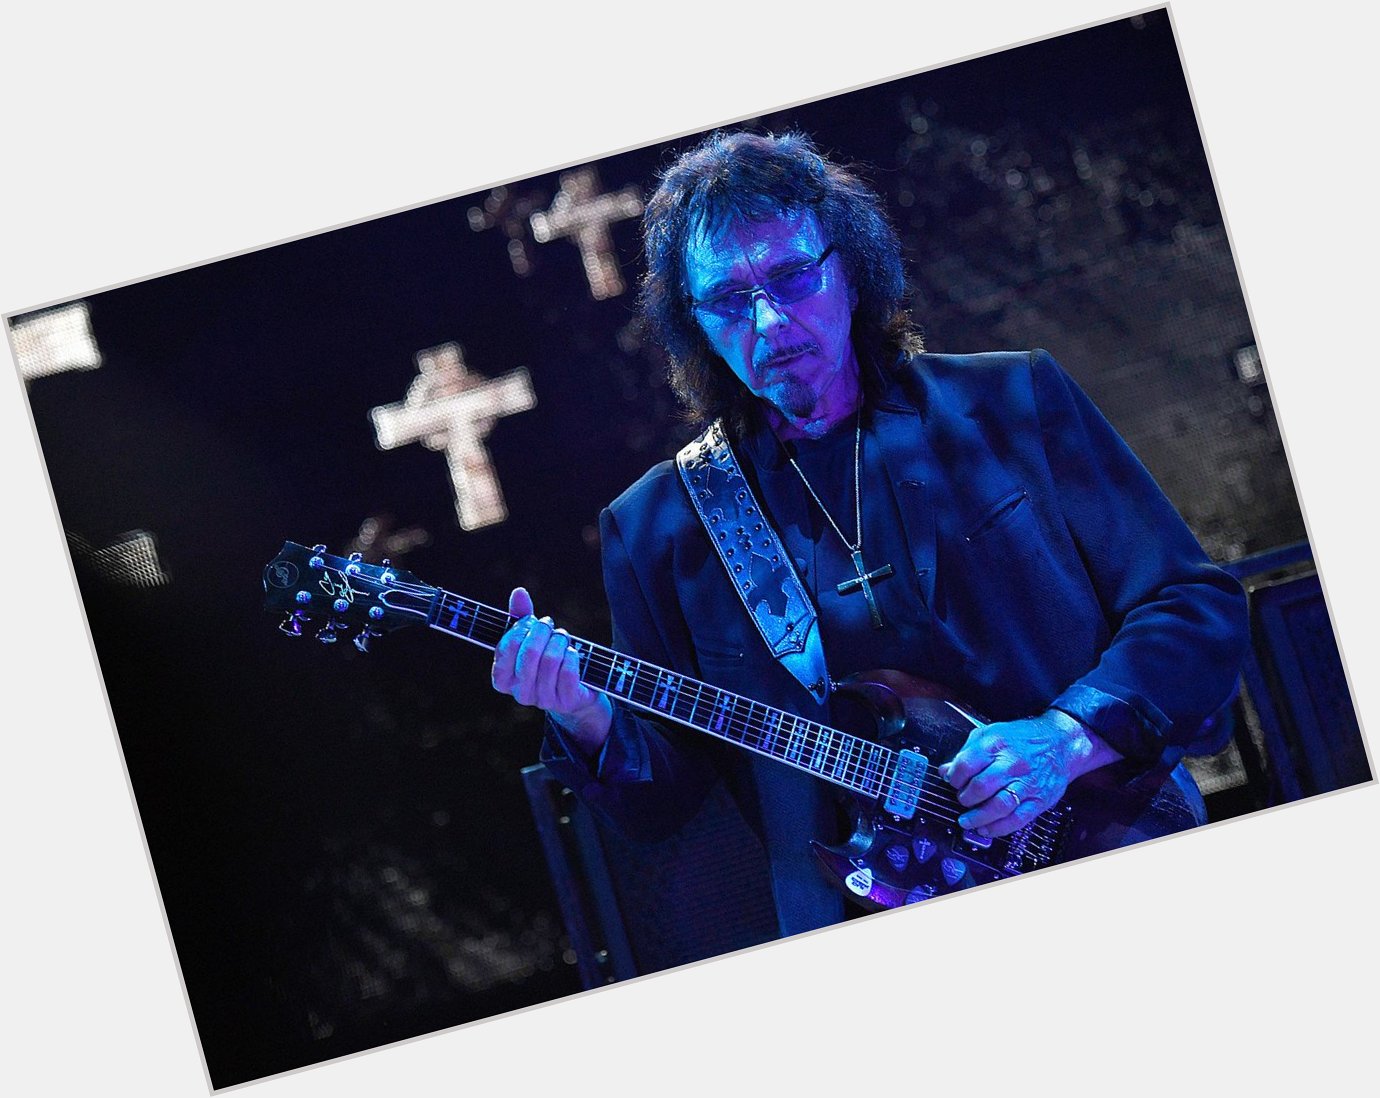 Happy Birthday to Tony Iommi a fucking god. I don\t think anyone has written as many catchy riffs as him. 